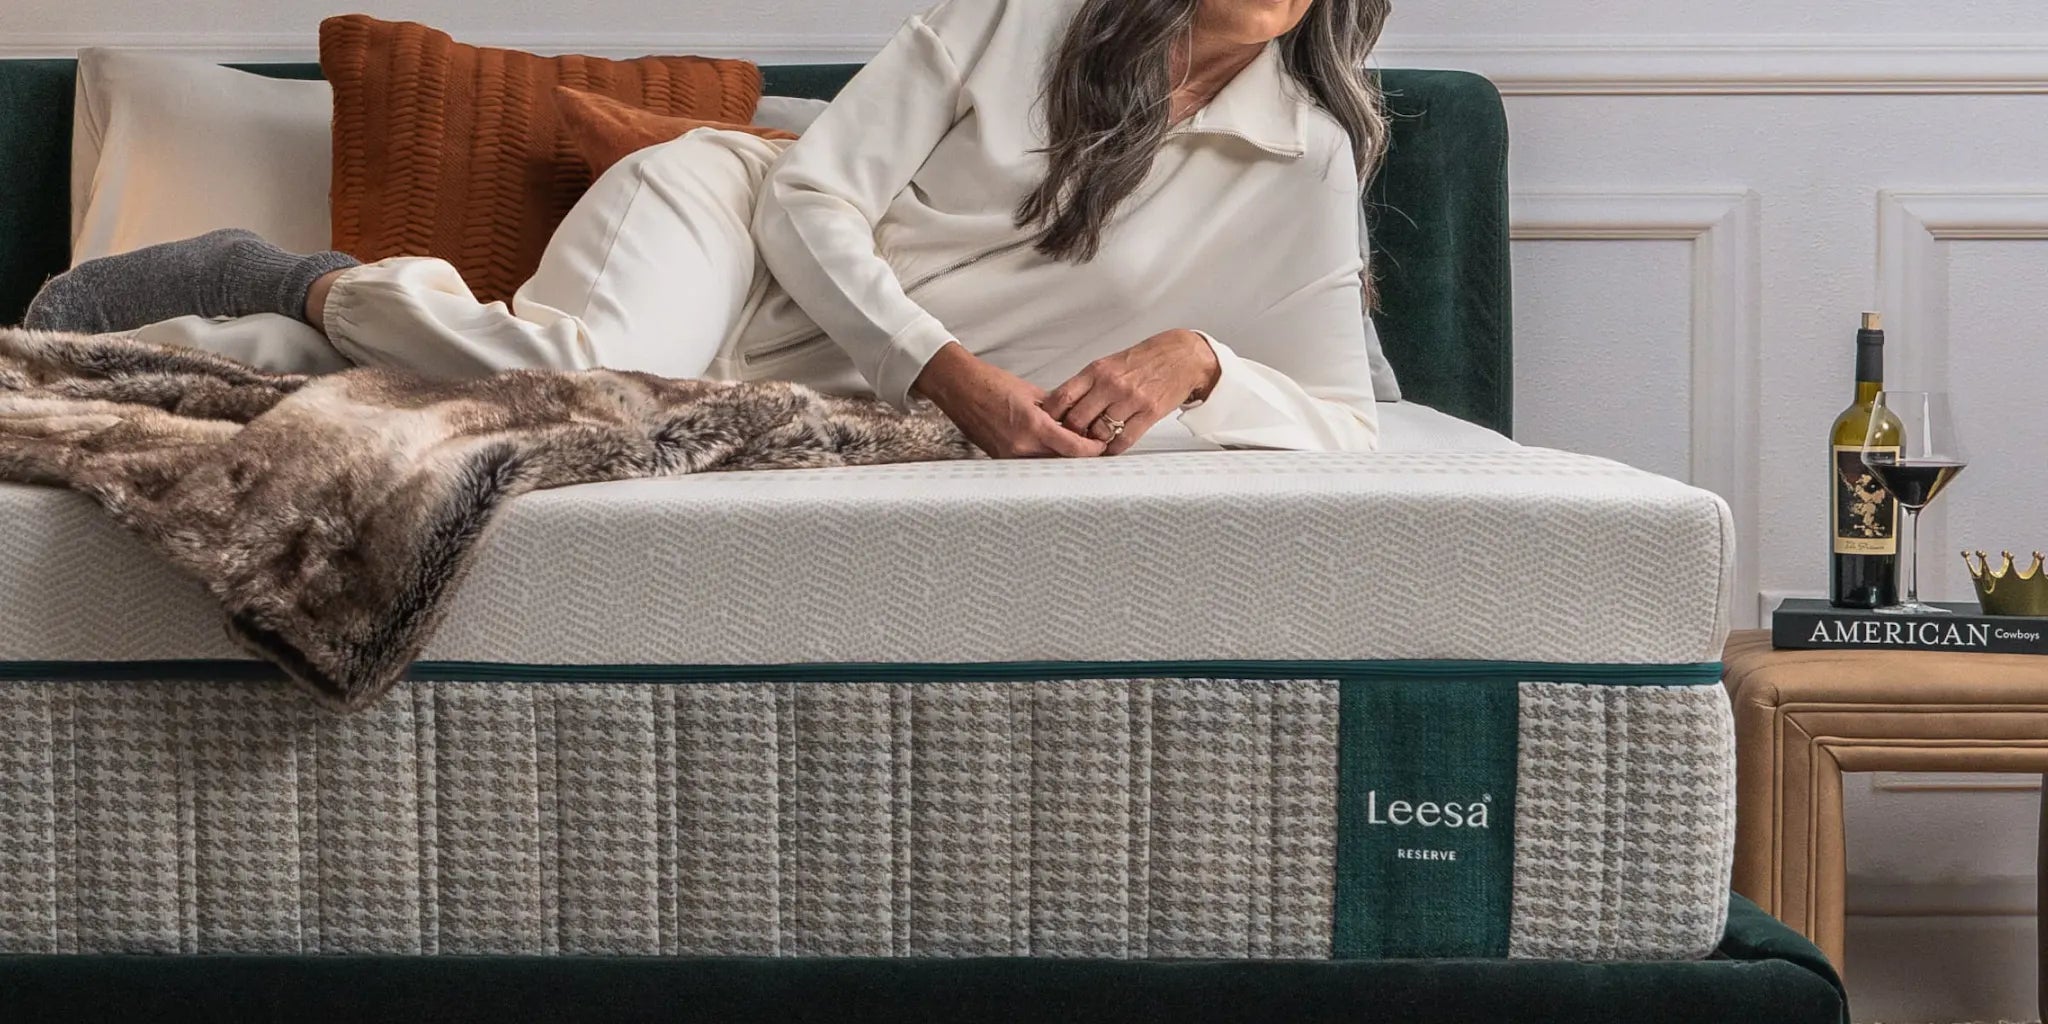 Leesa reverse mattress